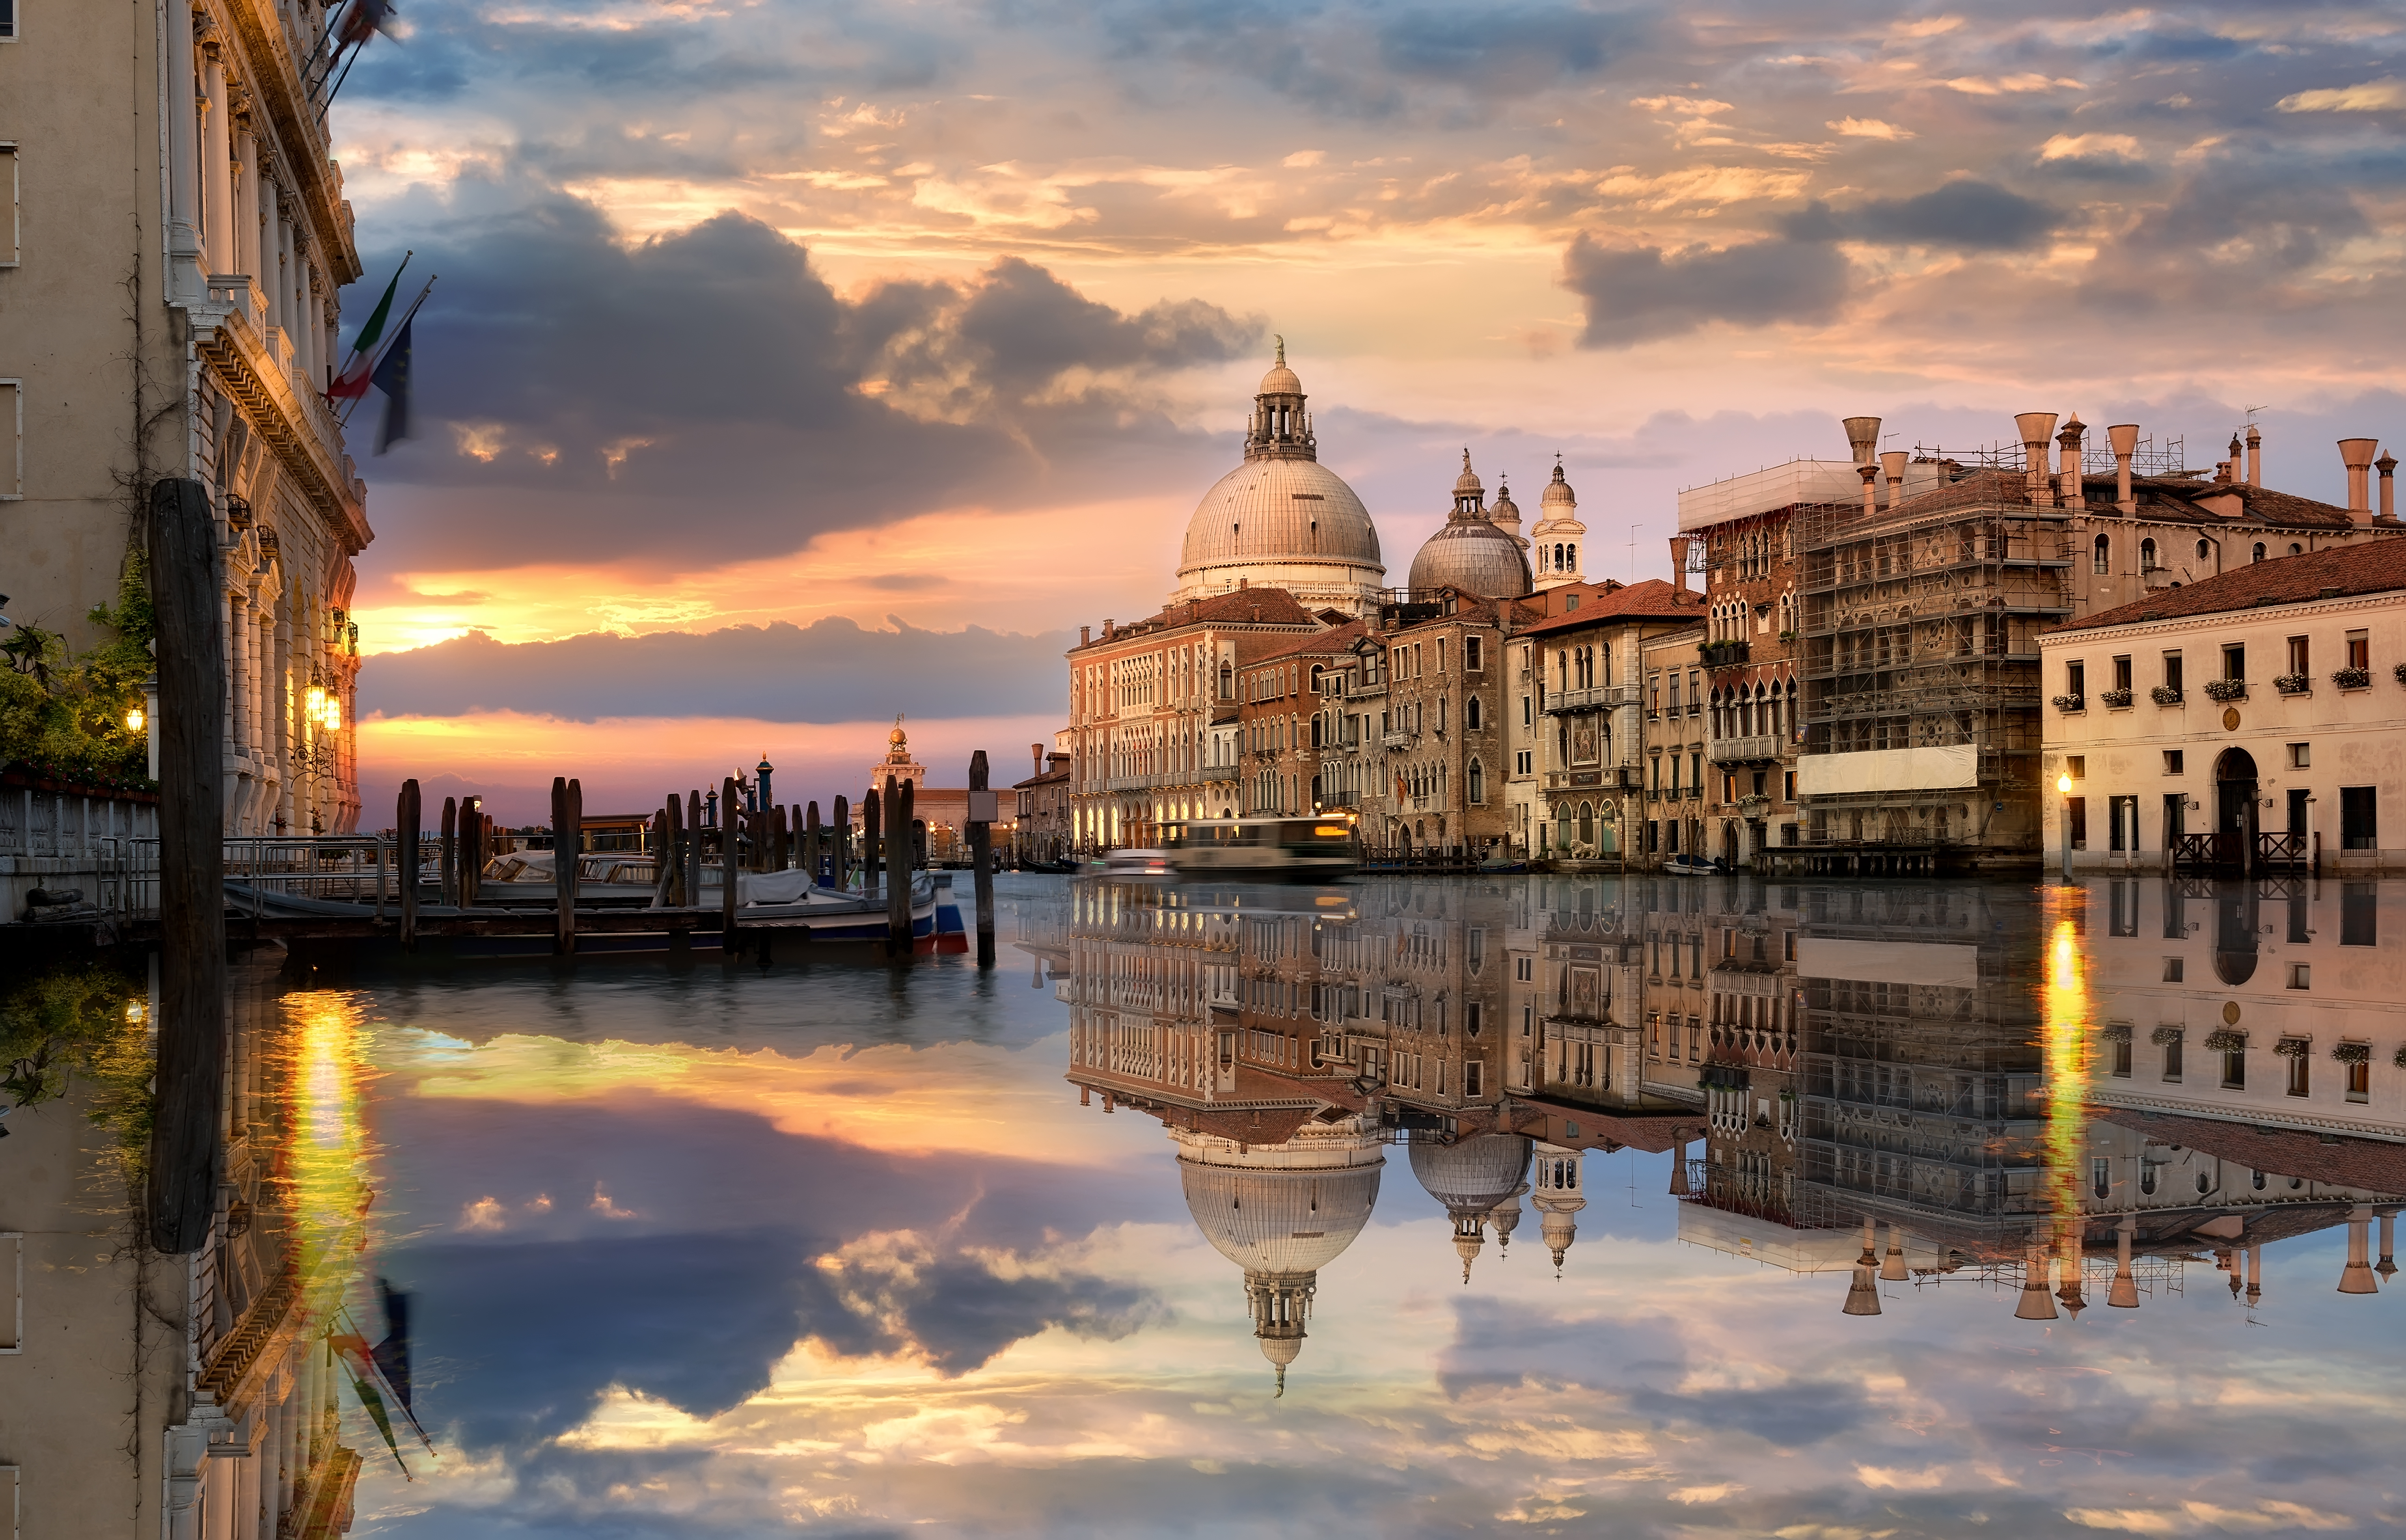 Cruceros de turistas son una amenaza para Venecia